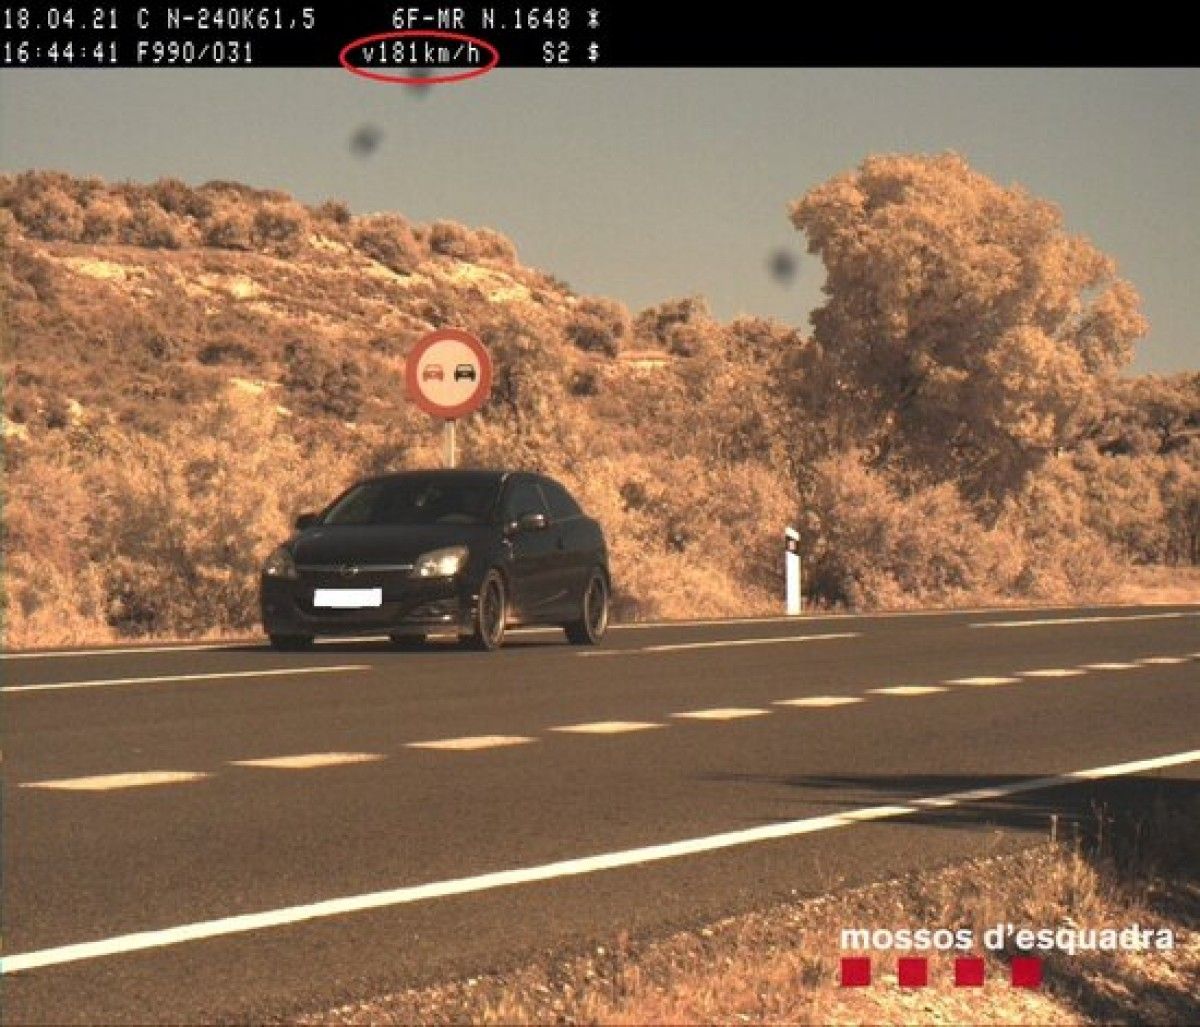 El vehicle detectat en un control dels Mossos d'Esquadra que circulava a 181 km/h a les Borges Blanques.